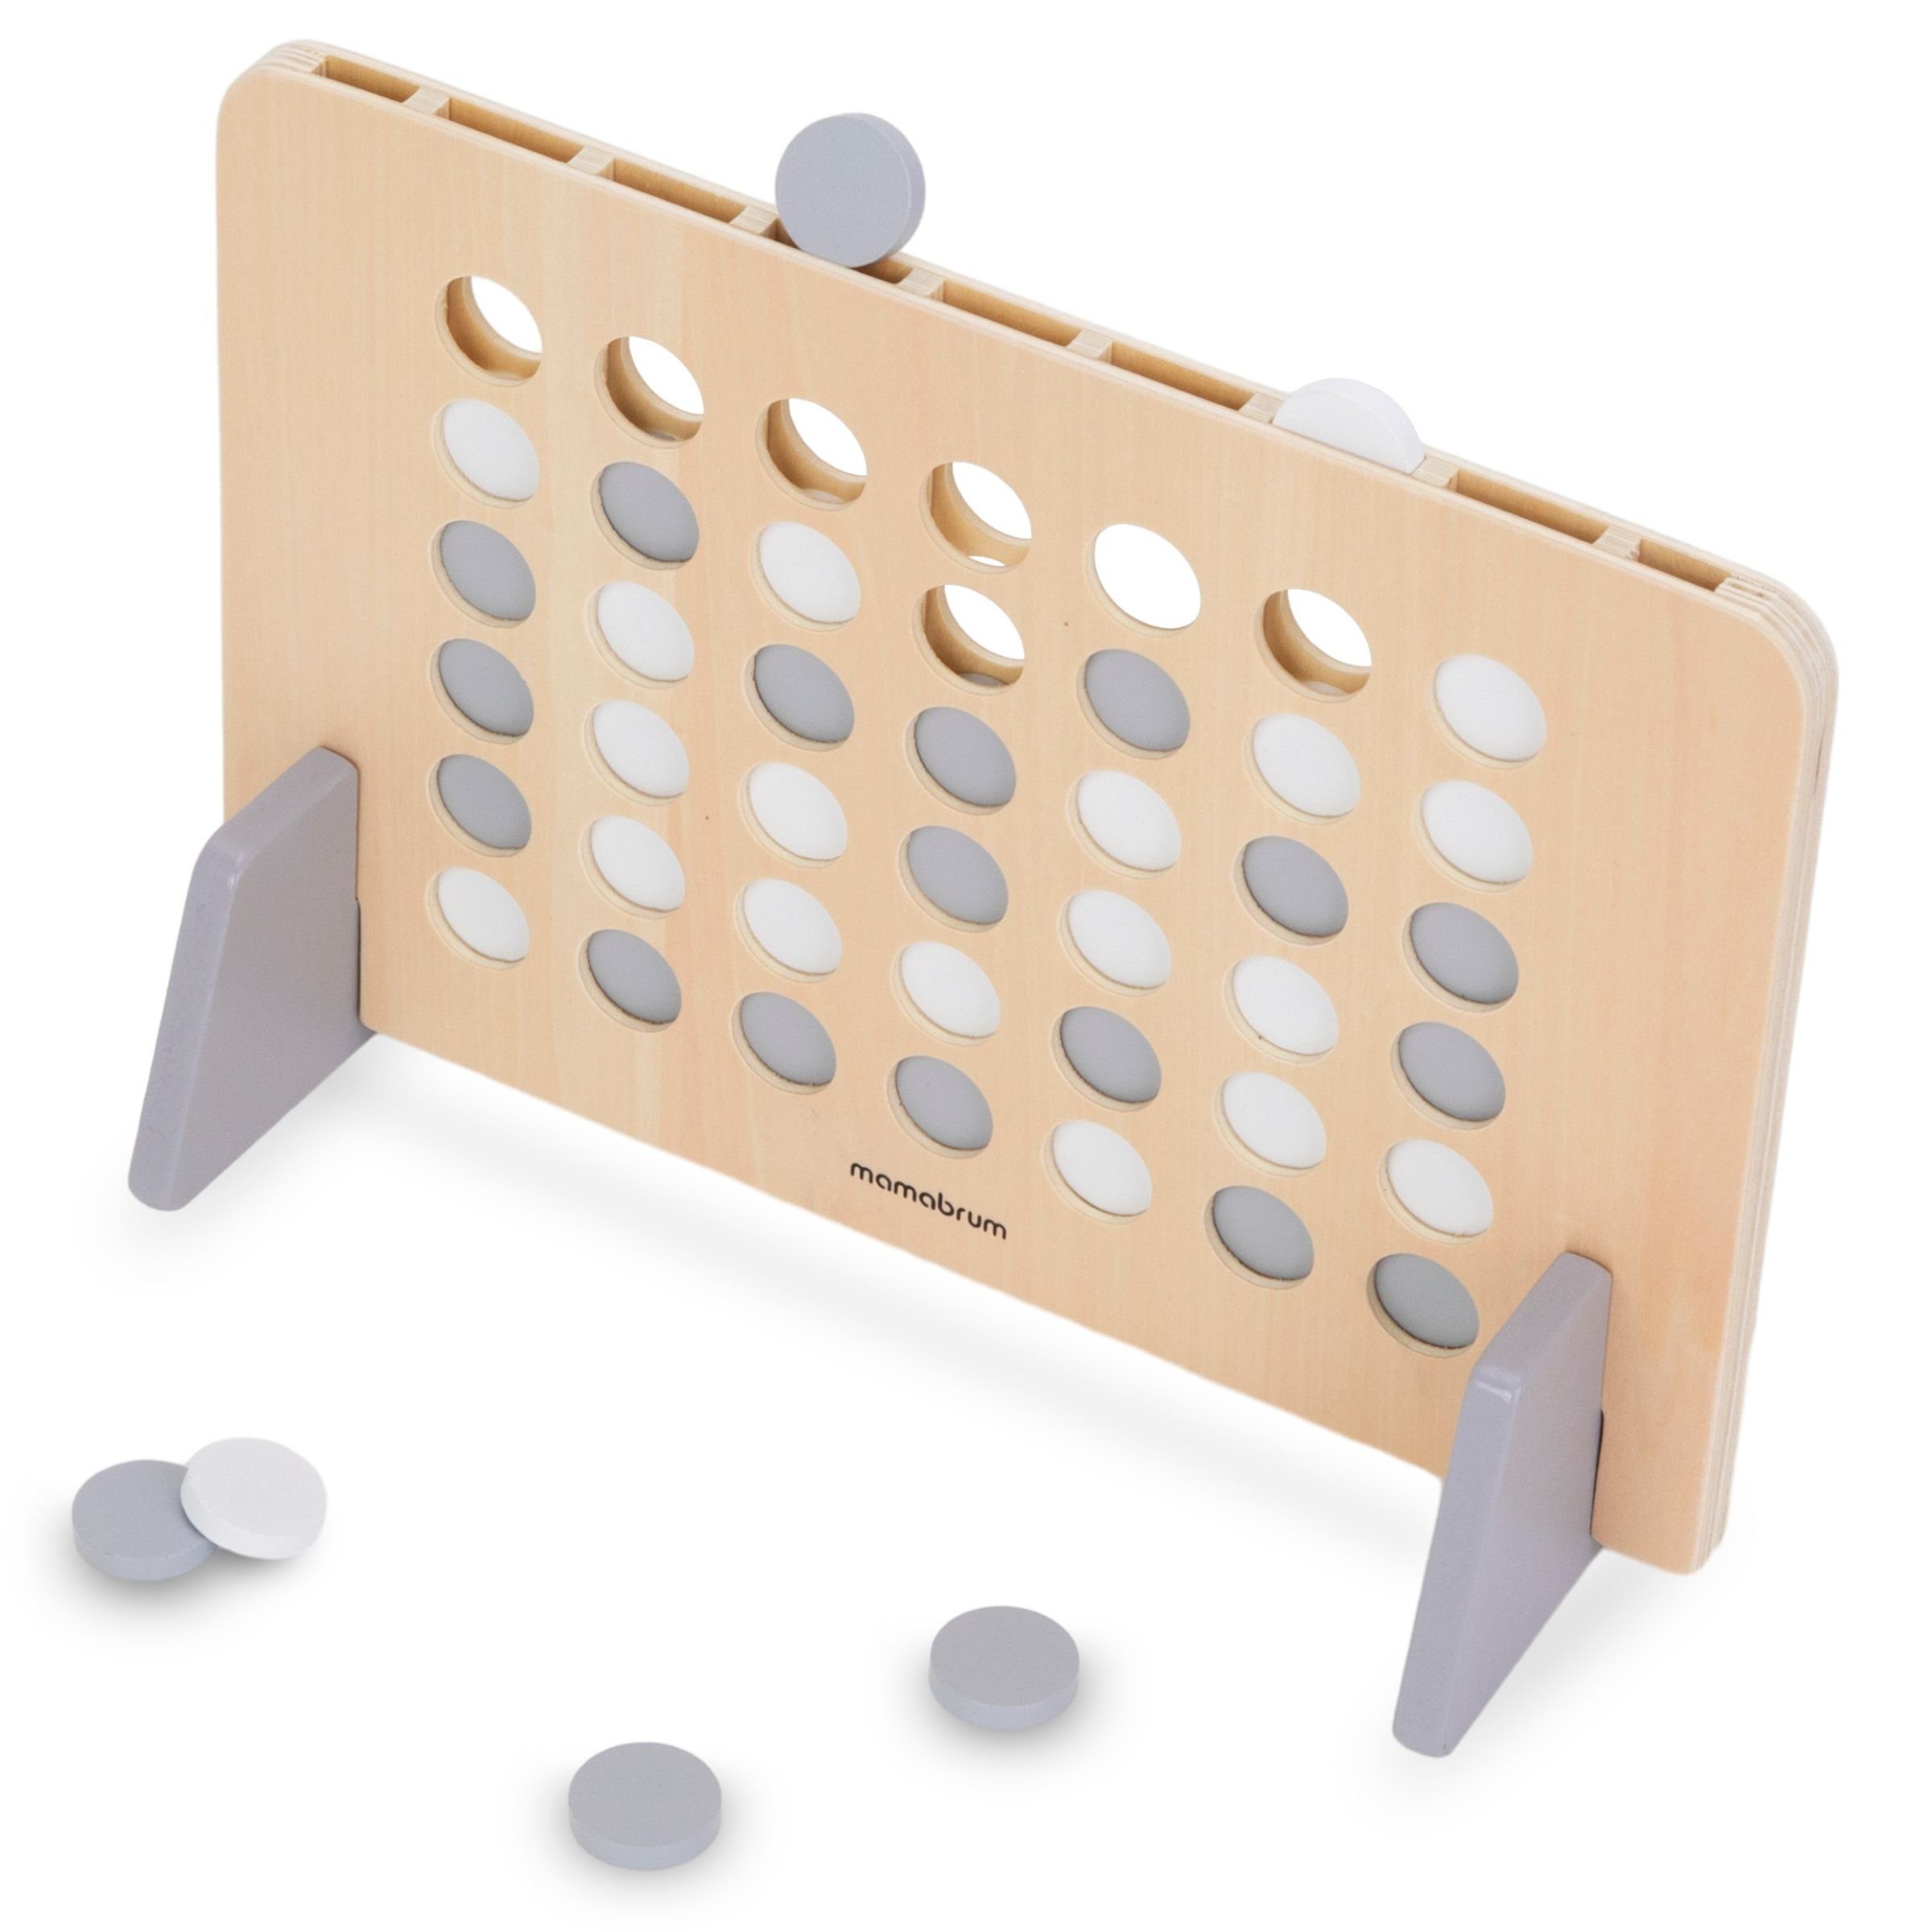 Puzzle-Sortierschale einer Puzzlespiel Mamabrum Reihe in 4